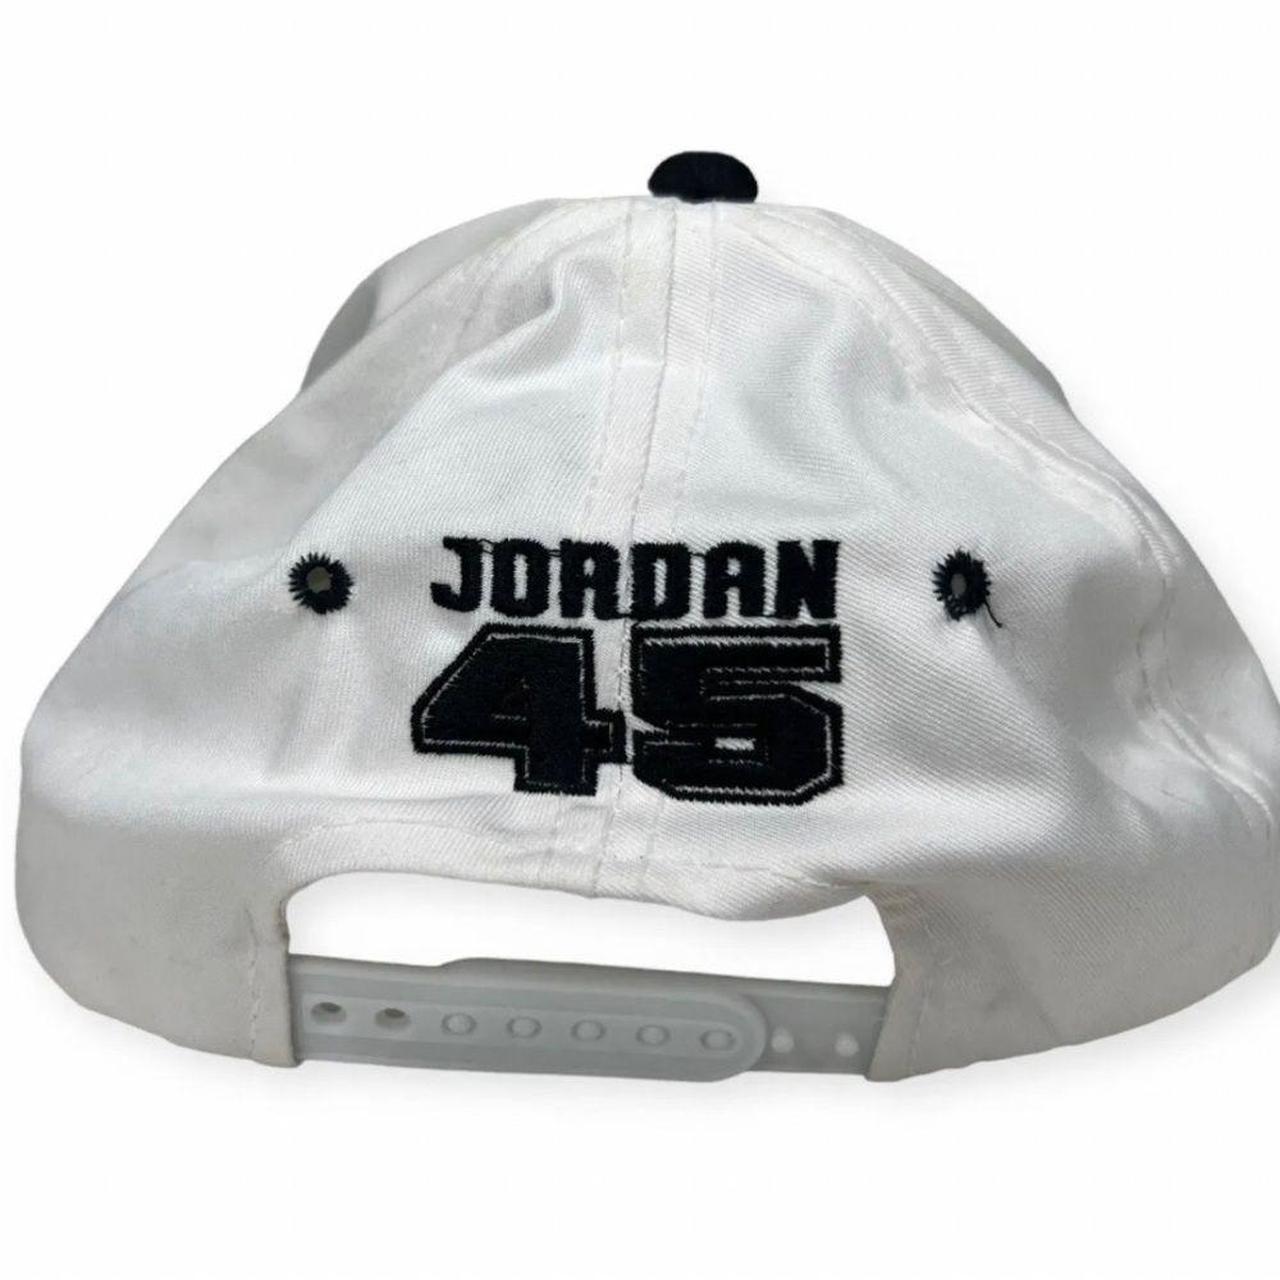 Jordan Men's Hat - White